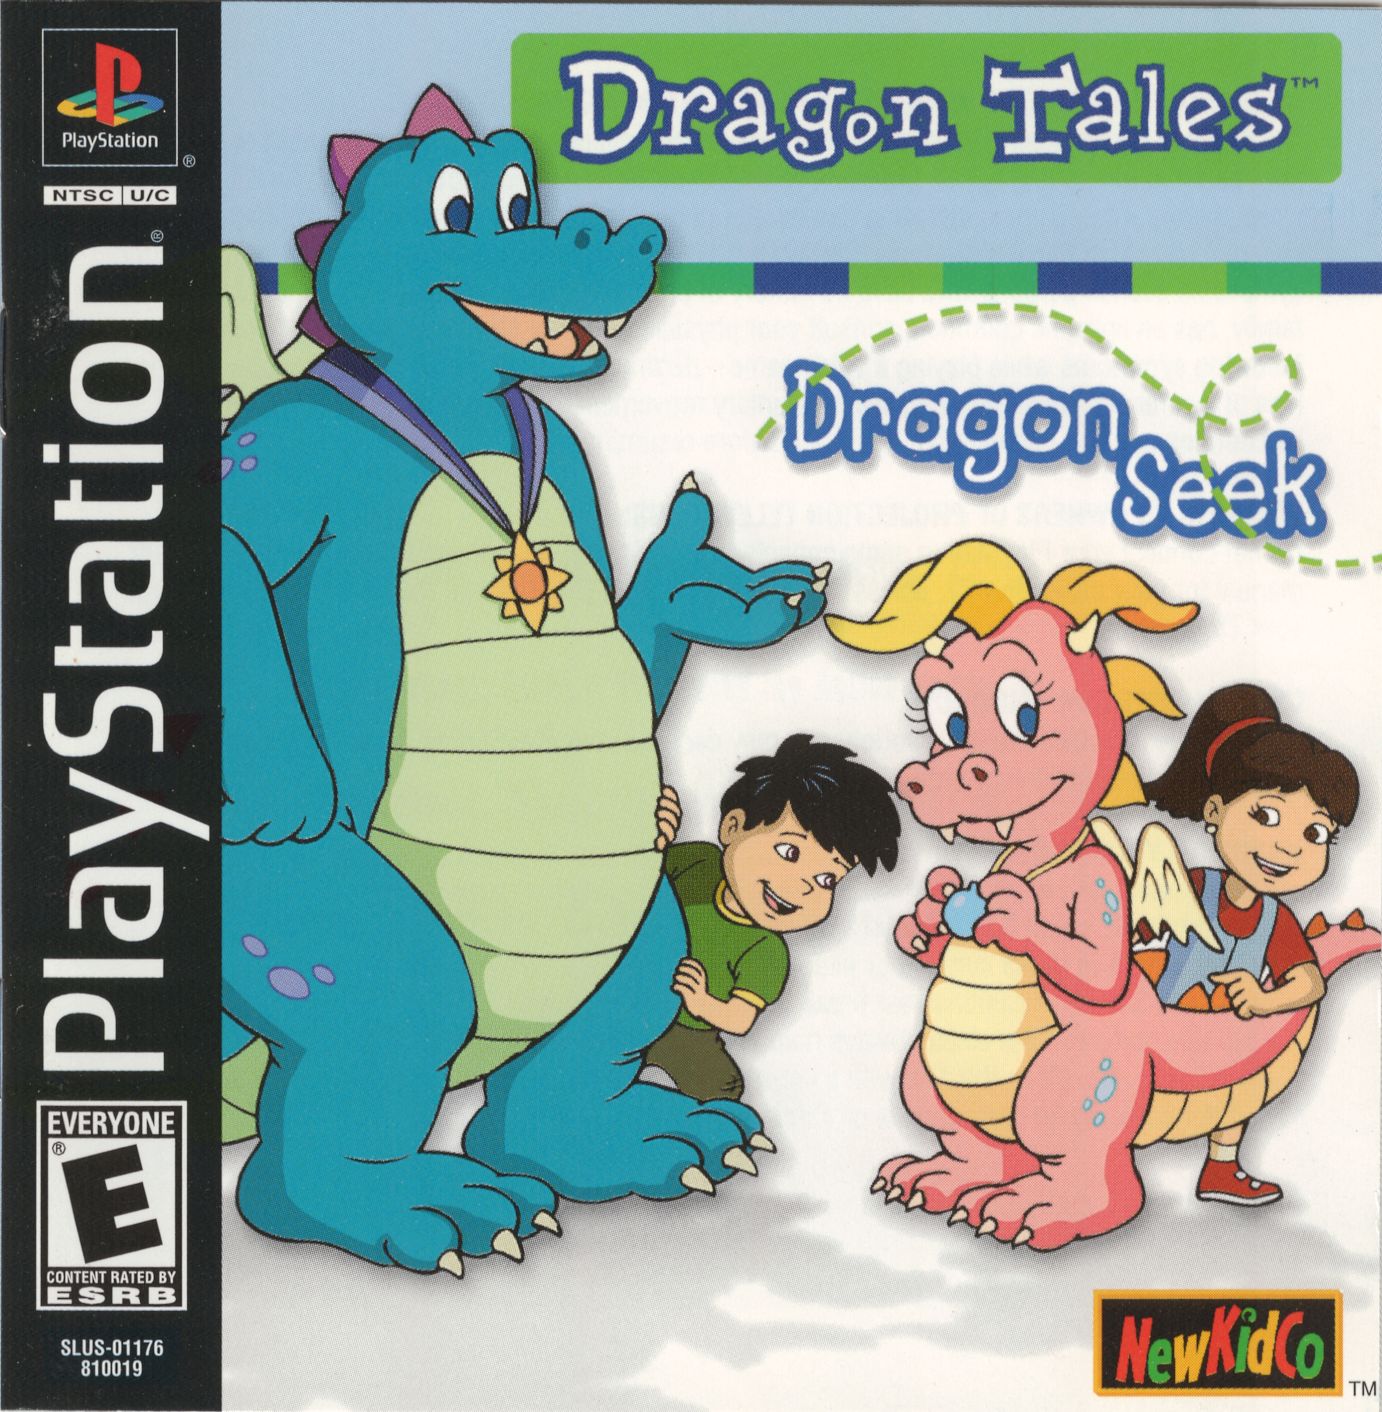 Dragon Tales - Dragon Seek PSX cover.